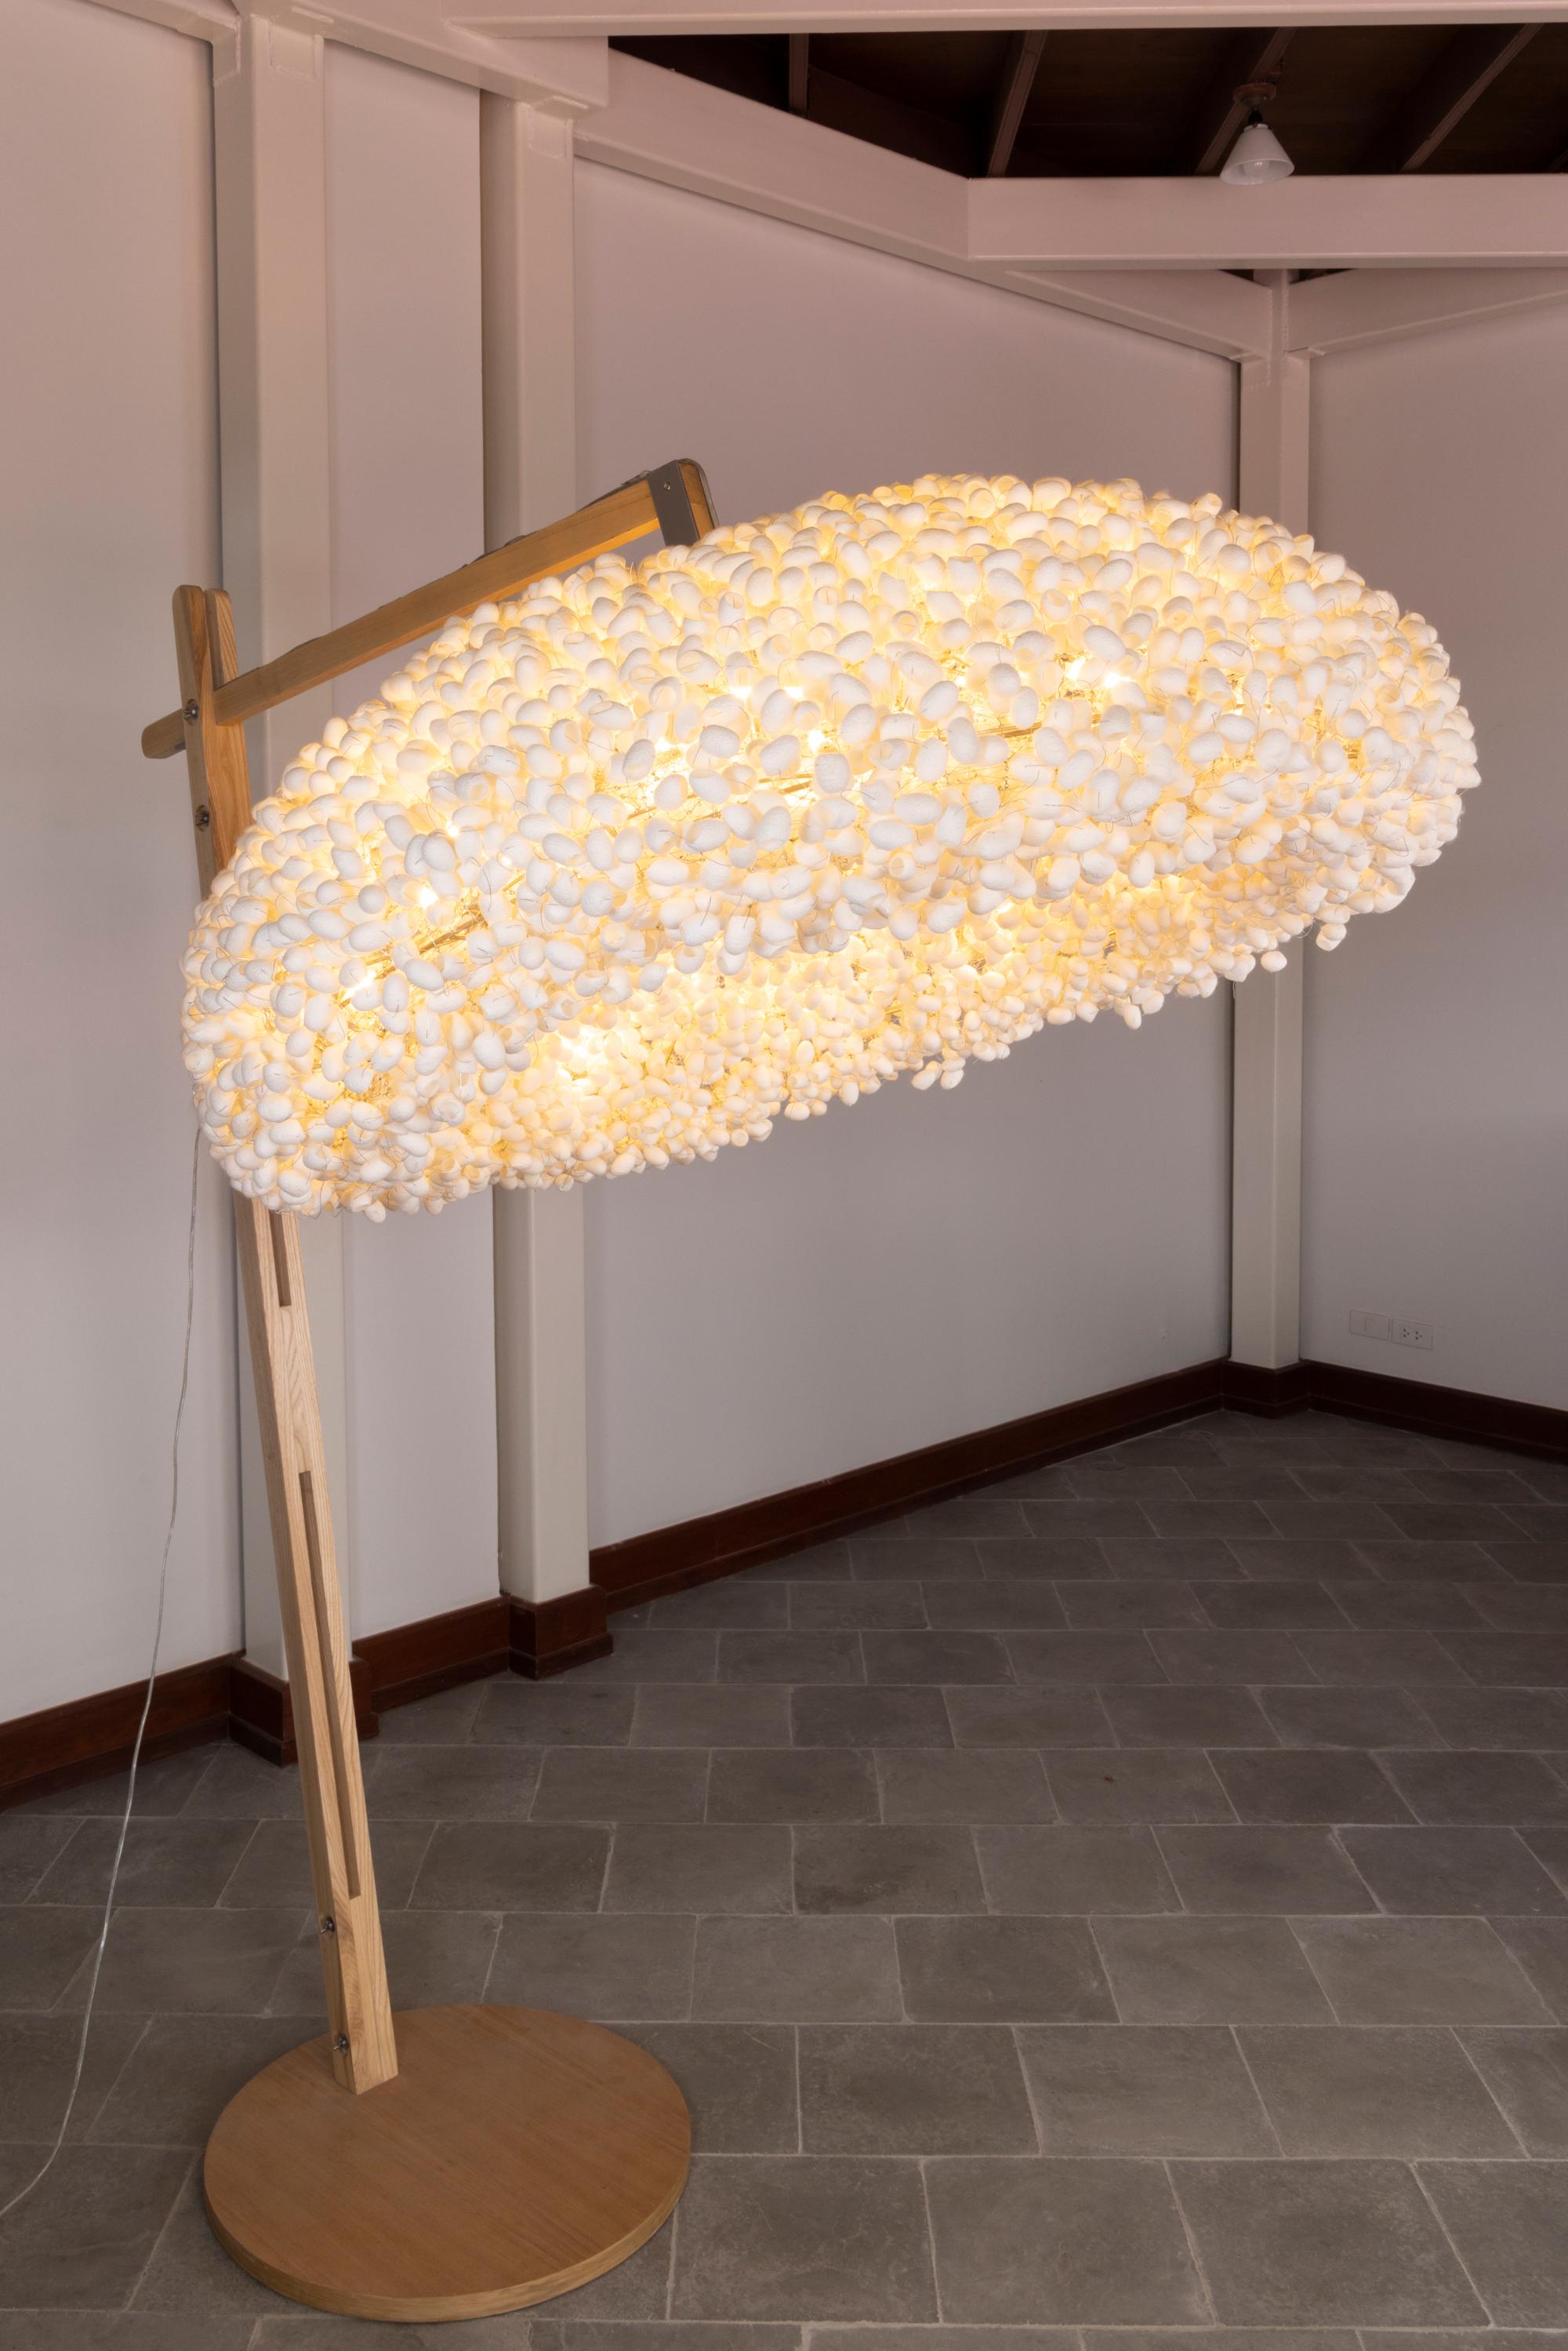 Lampadaire Escape d'Ango, lampadaire en soie matelassé à la main en forme de cocon
Le lampadaire Escape avec une base en bois de frêne est développé à partir de la série de cinq Transceiver Spaces de la Biennale de design de Gwangju 2017, en Corée